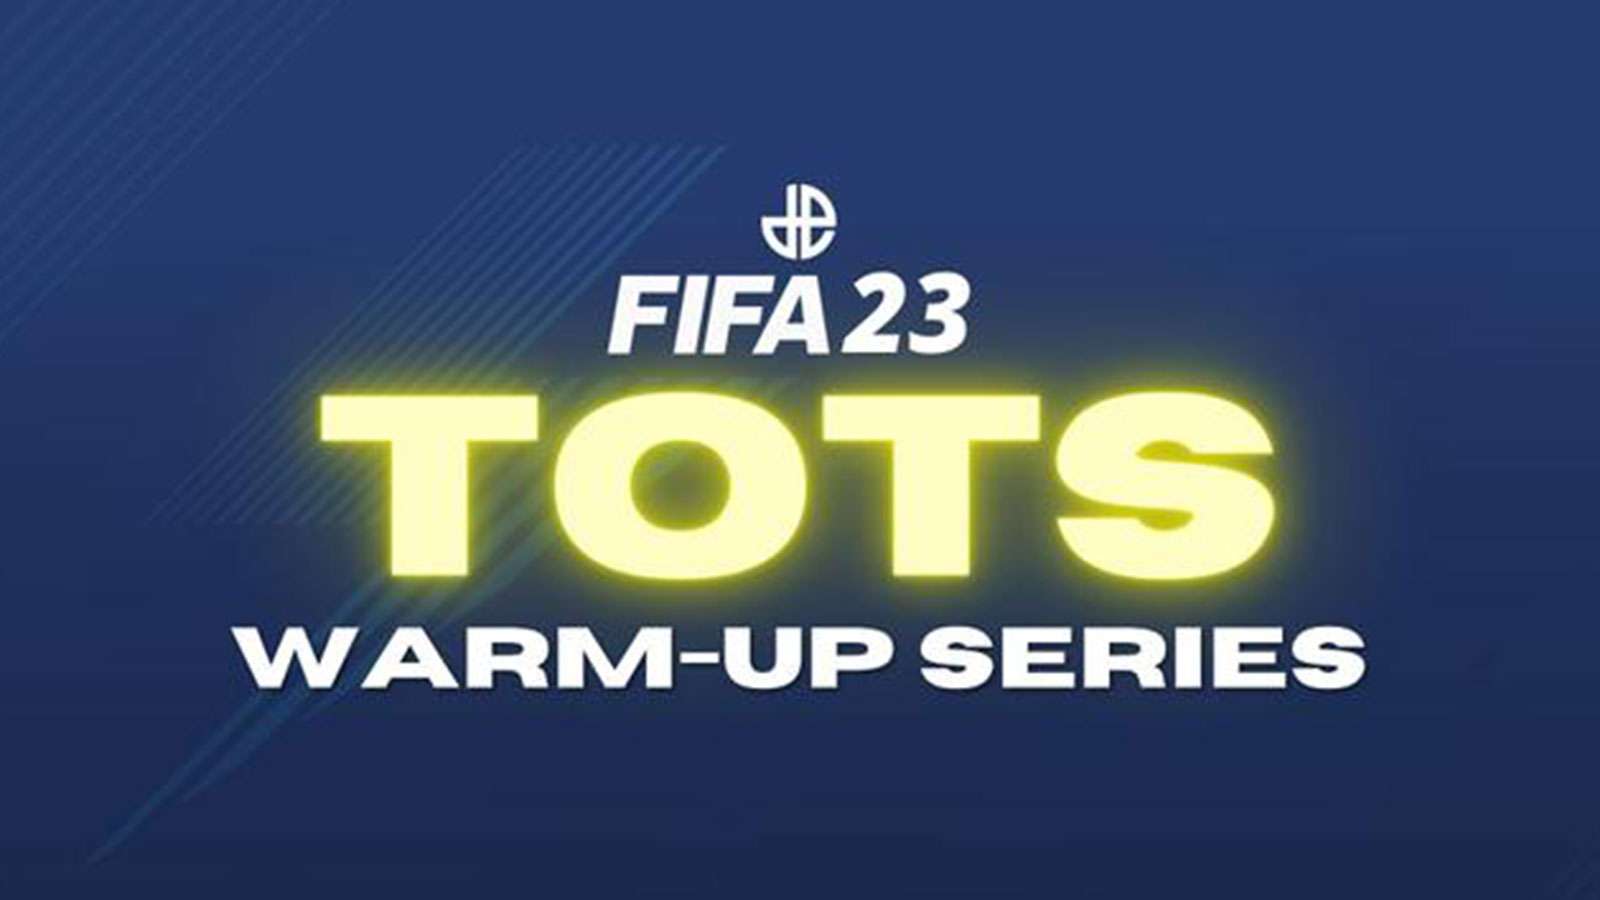 FIFA 23 TOTS Warm-Up